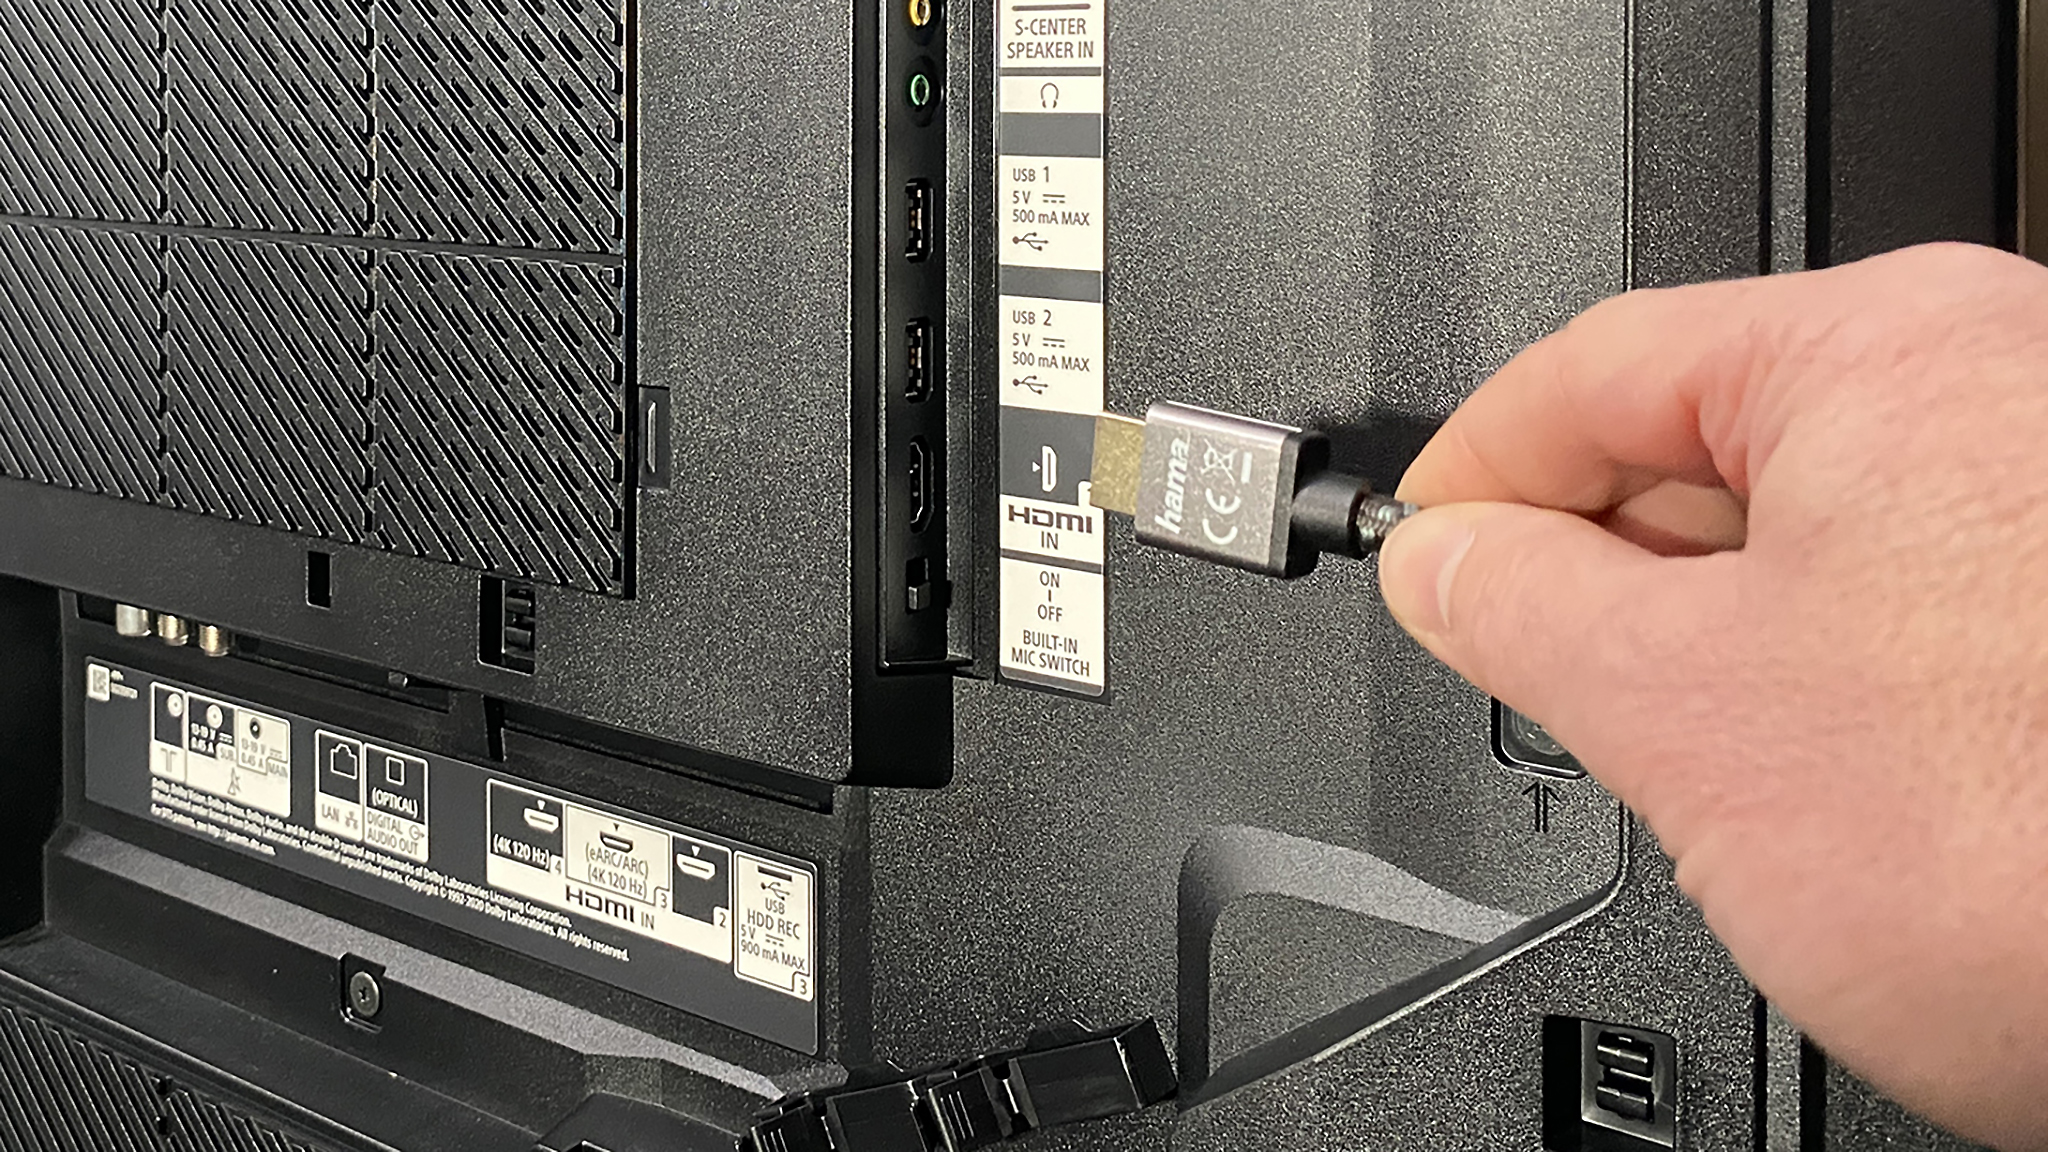 Wechseln Sie zum Menü des HDMI-Eingangs am Fernseher oder Monitor.
Stellen Sie sicher, dass der richtige HDMI-Eingang ausgewählt ist.